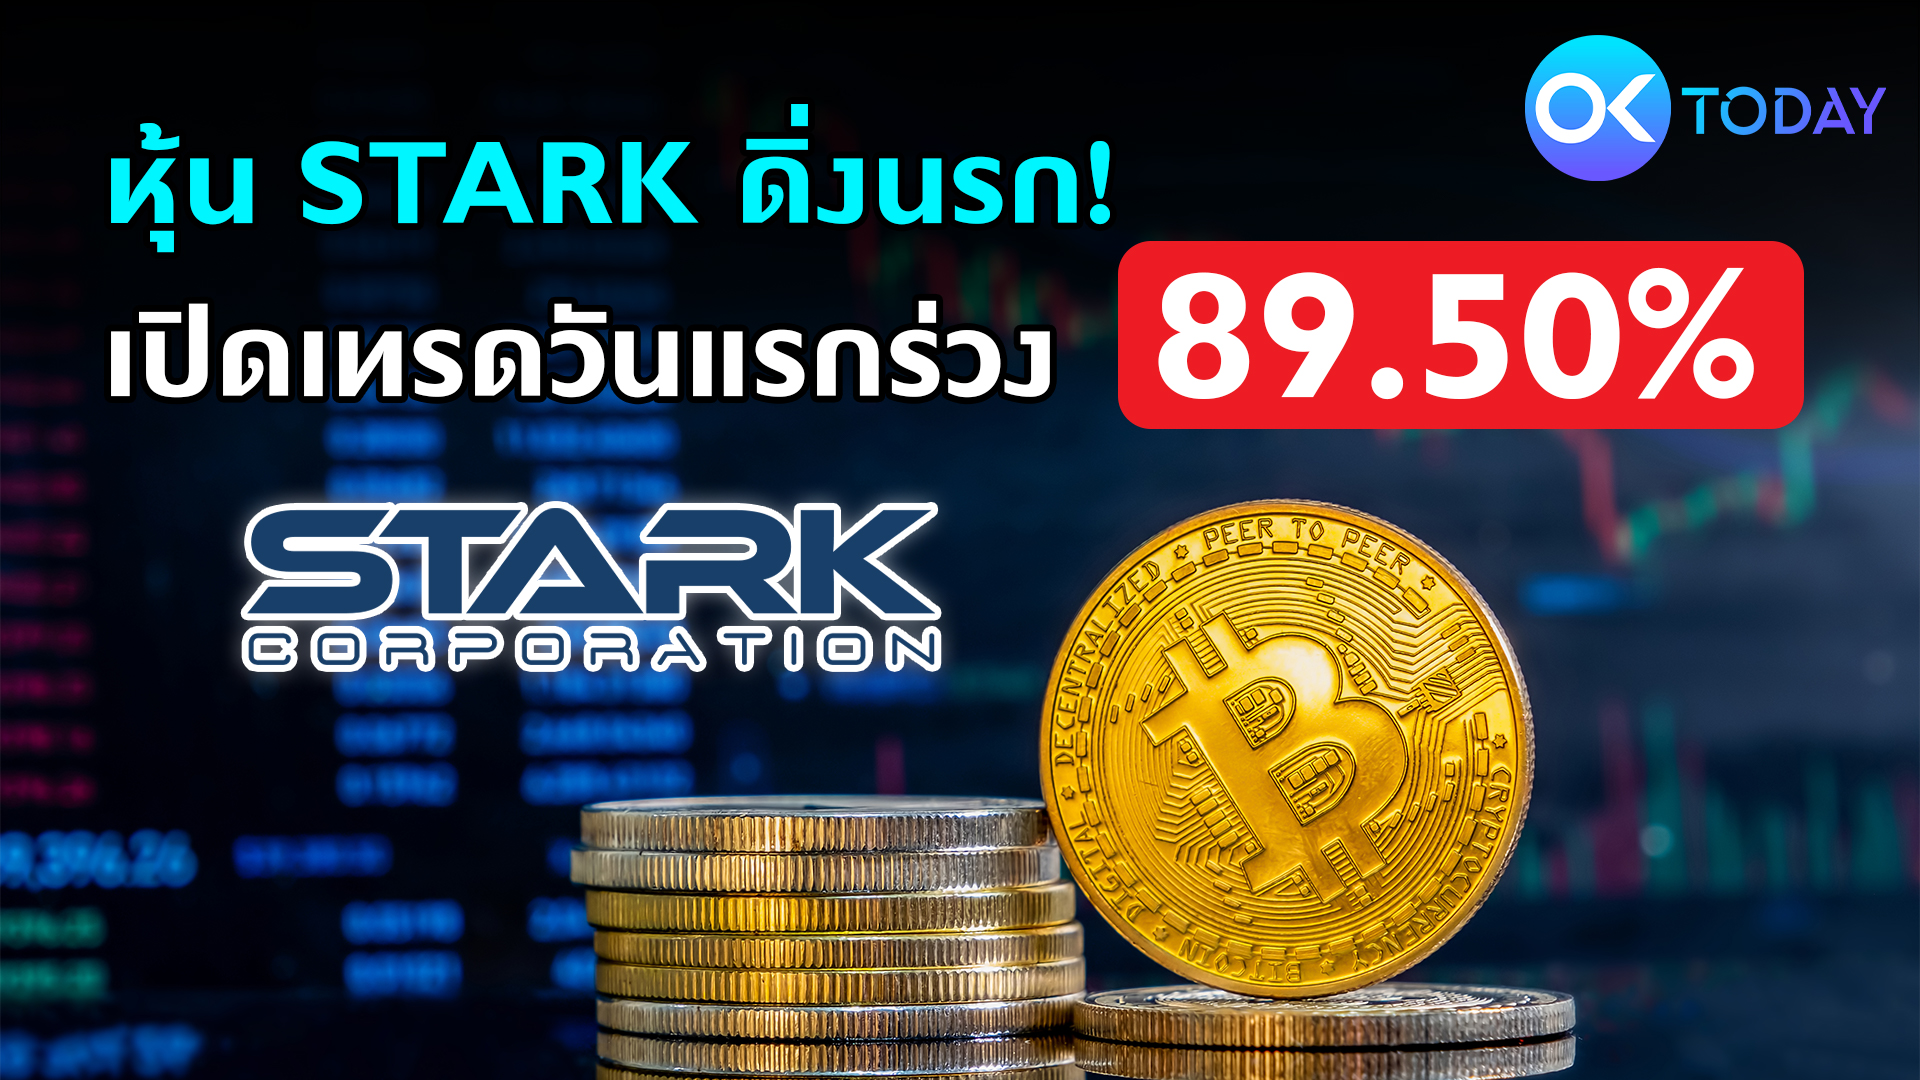 หุ้น STARK ดิ่งนรก! เปิดเทรดวันแรกร่วง 89.50%